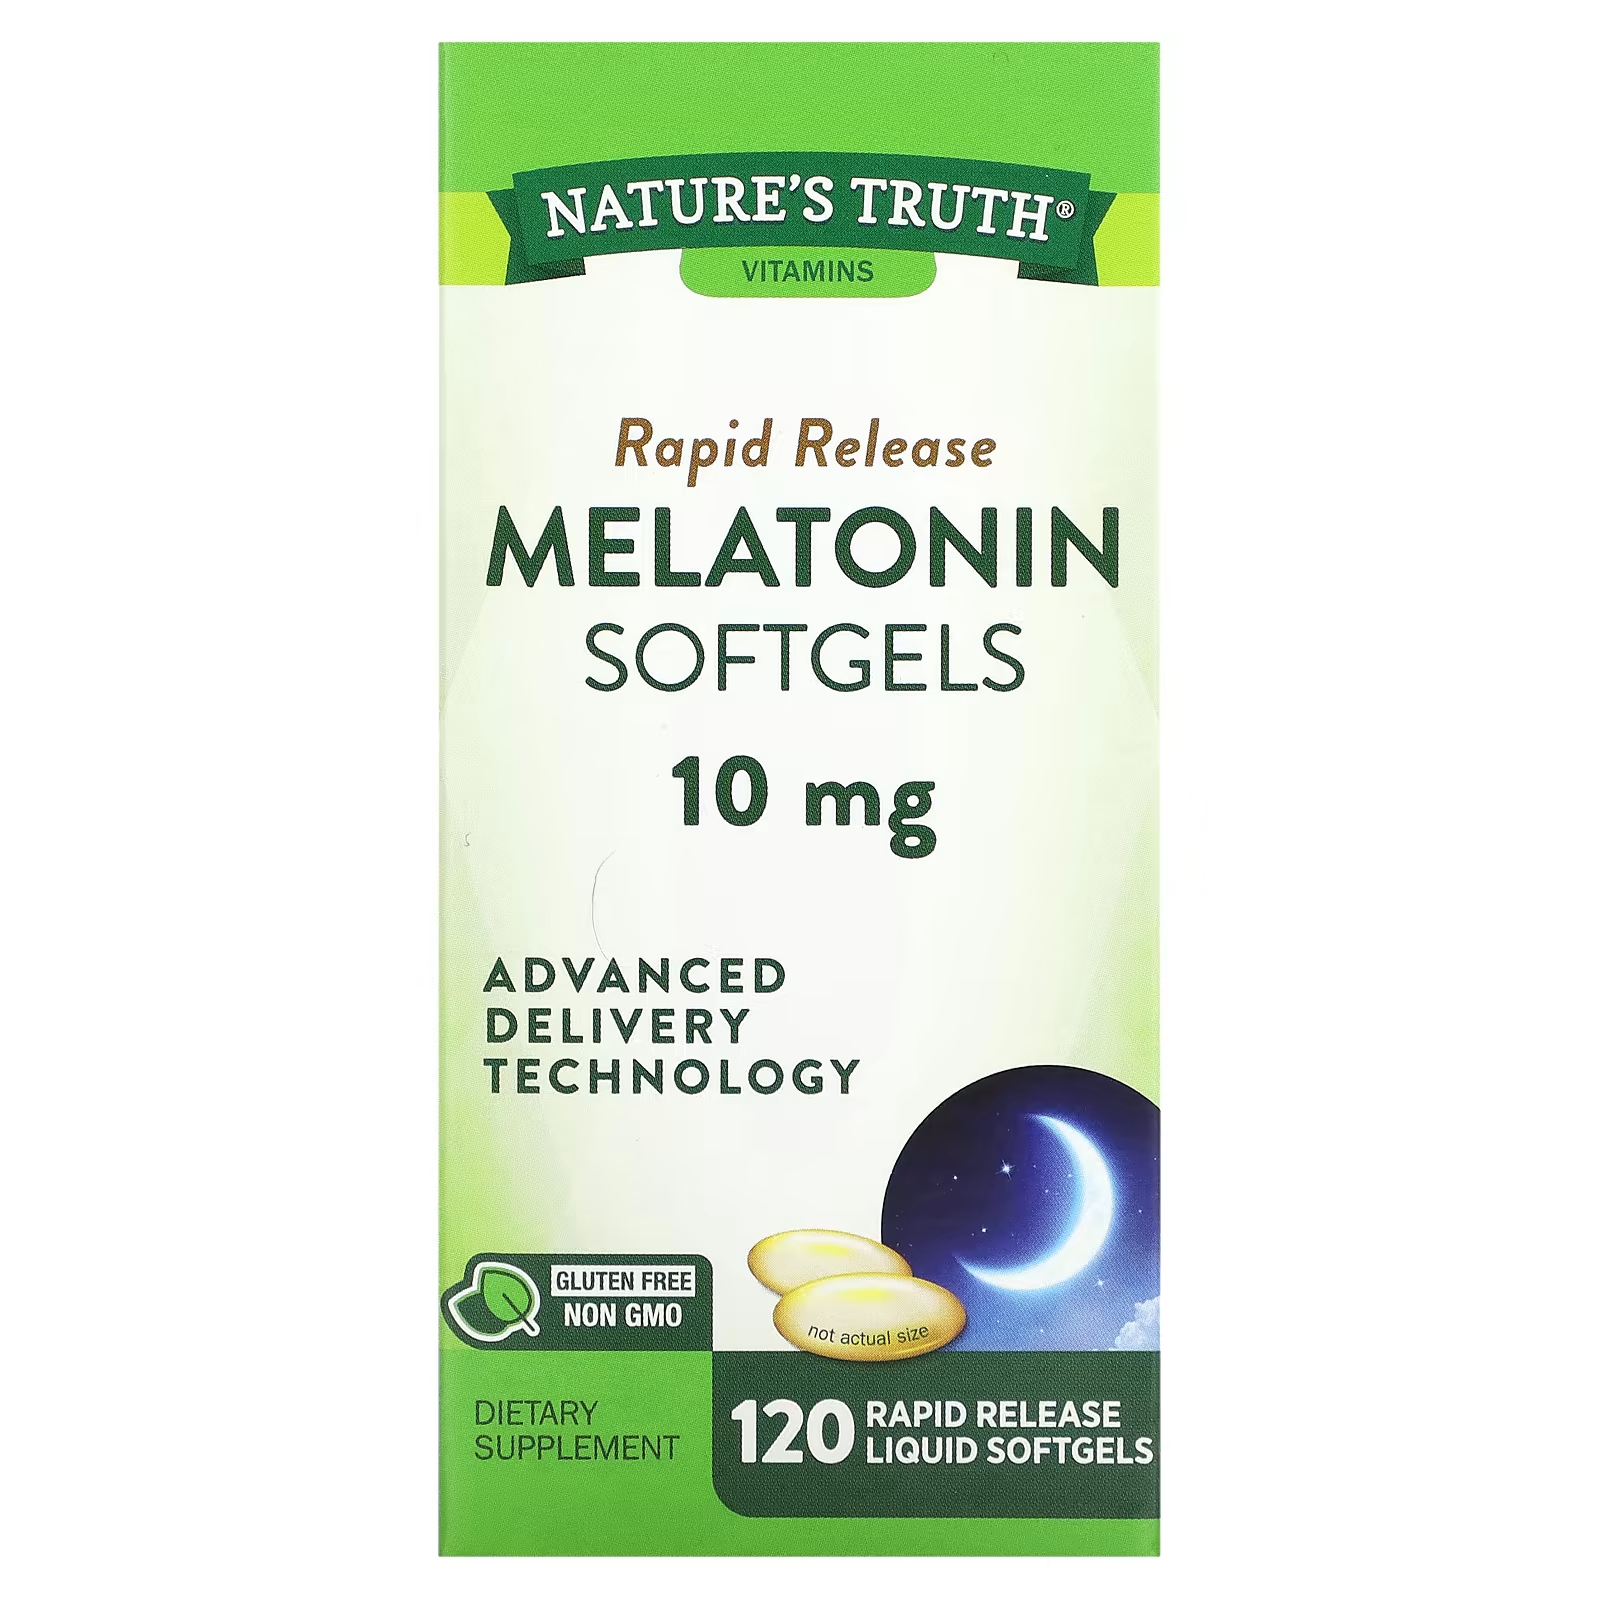 Nature's Truth Мелатонин в мягких капсулах, 10 мг, 120 жидких мягких таблеток с быстрым высвобождением